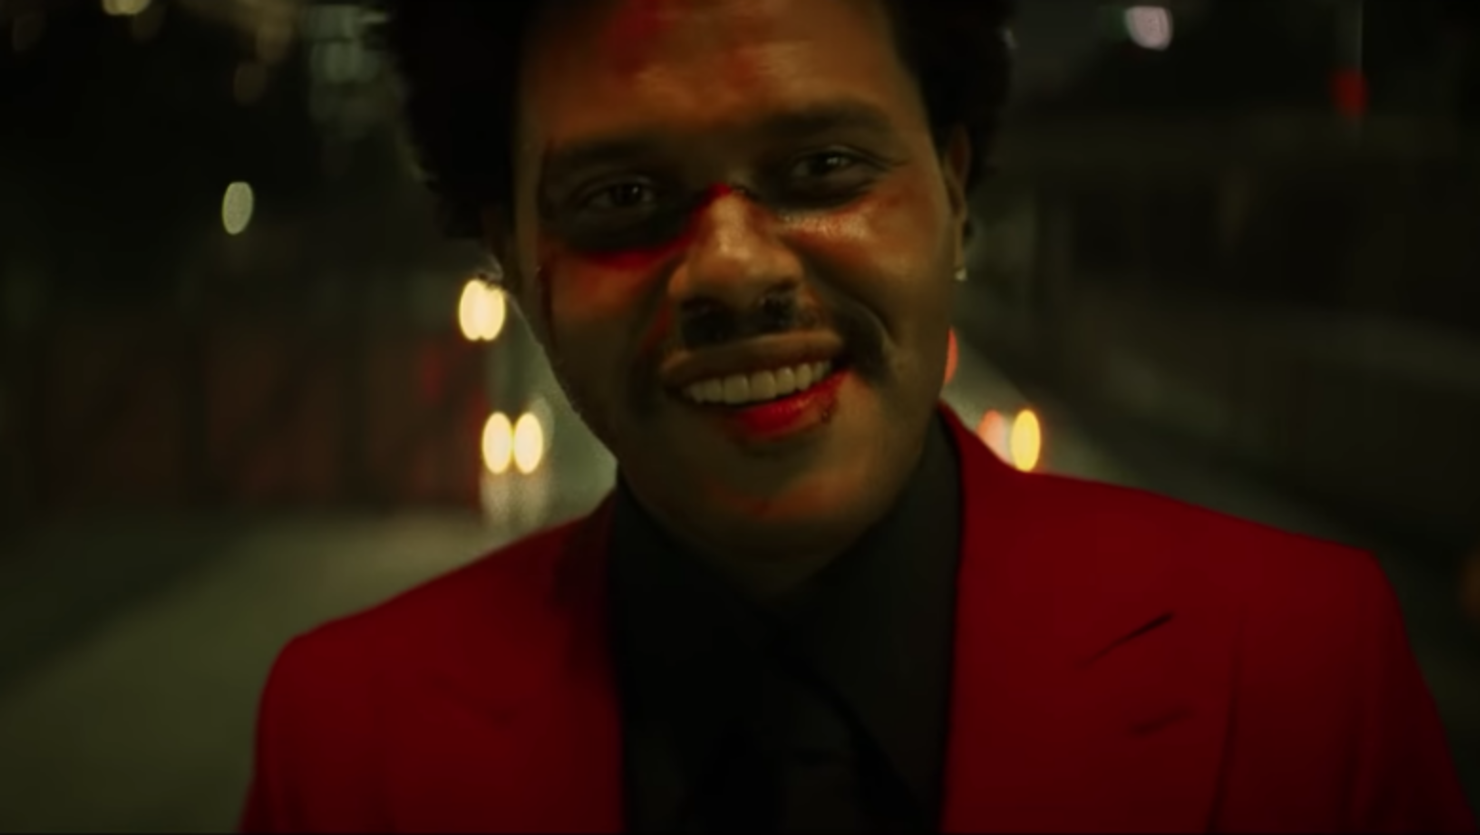 Следующая спеть. The Weeknd Blinding Lights. Weeknd 2020 Blinding Lights. The Weeknd Blinding Lights обложка. Певец де викенд.